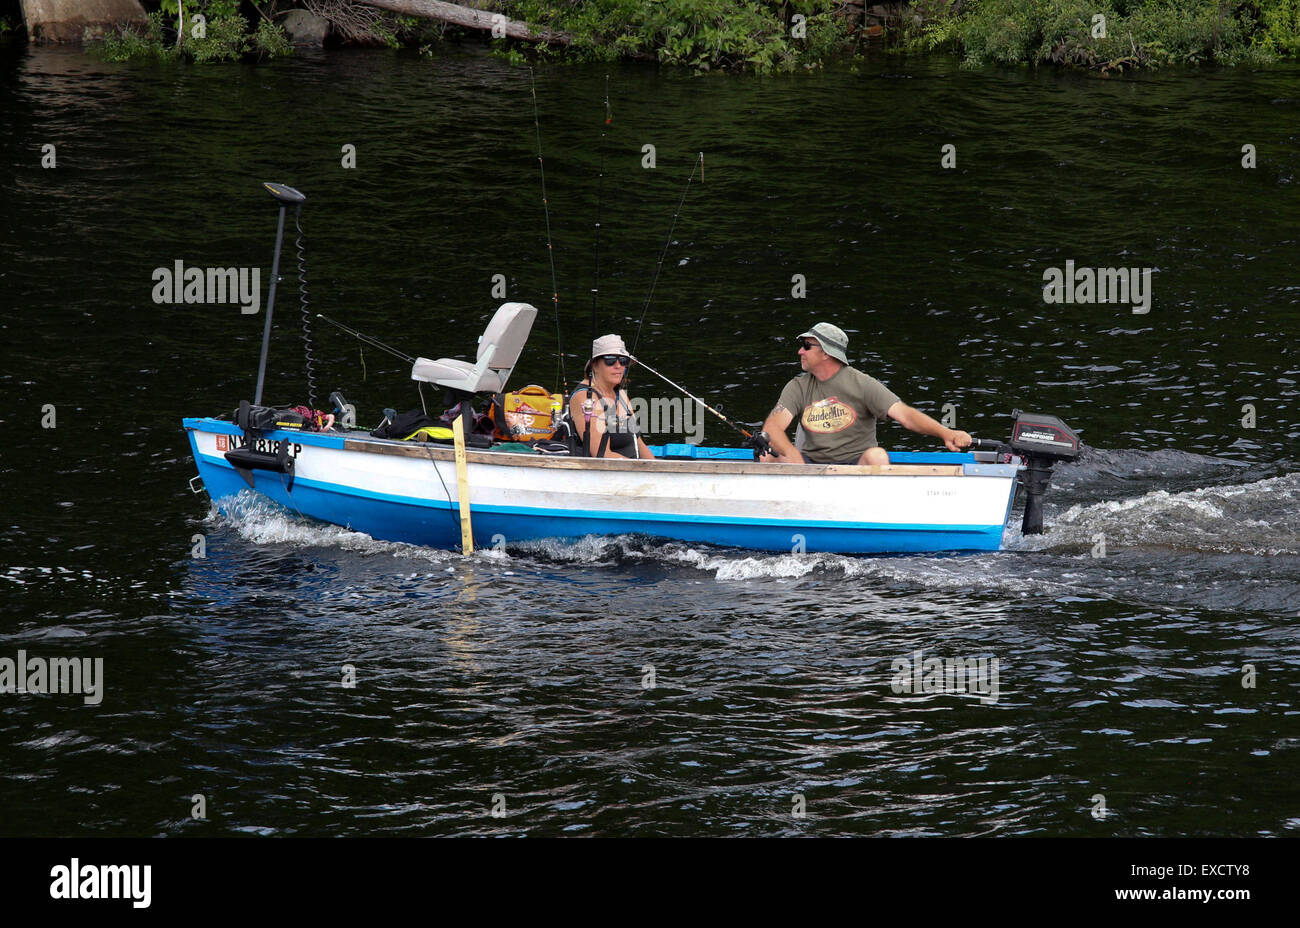 Small fishing boat Stock Photo - Alamy